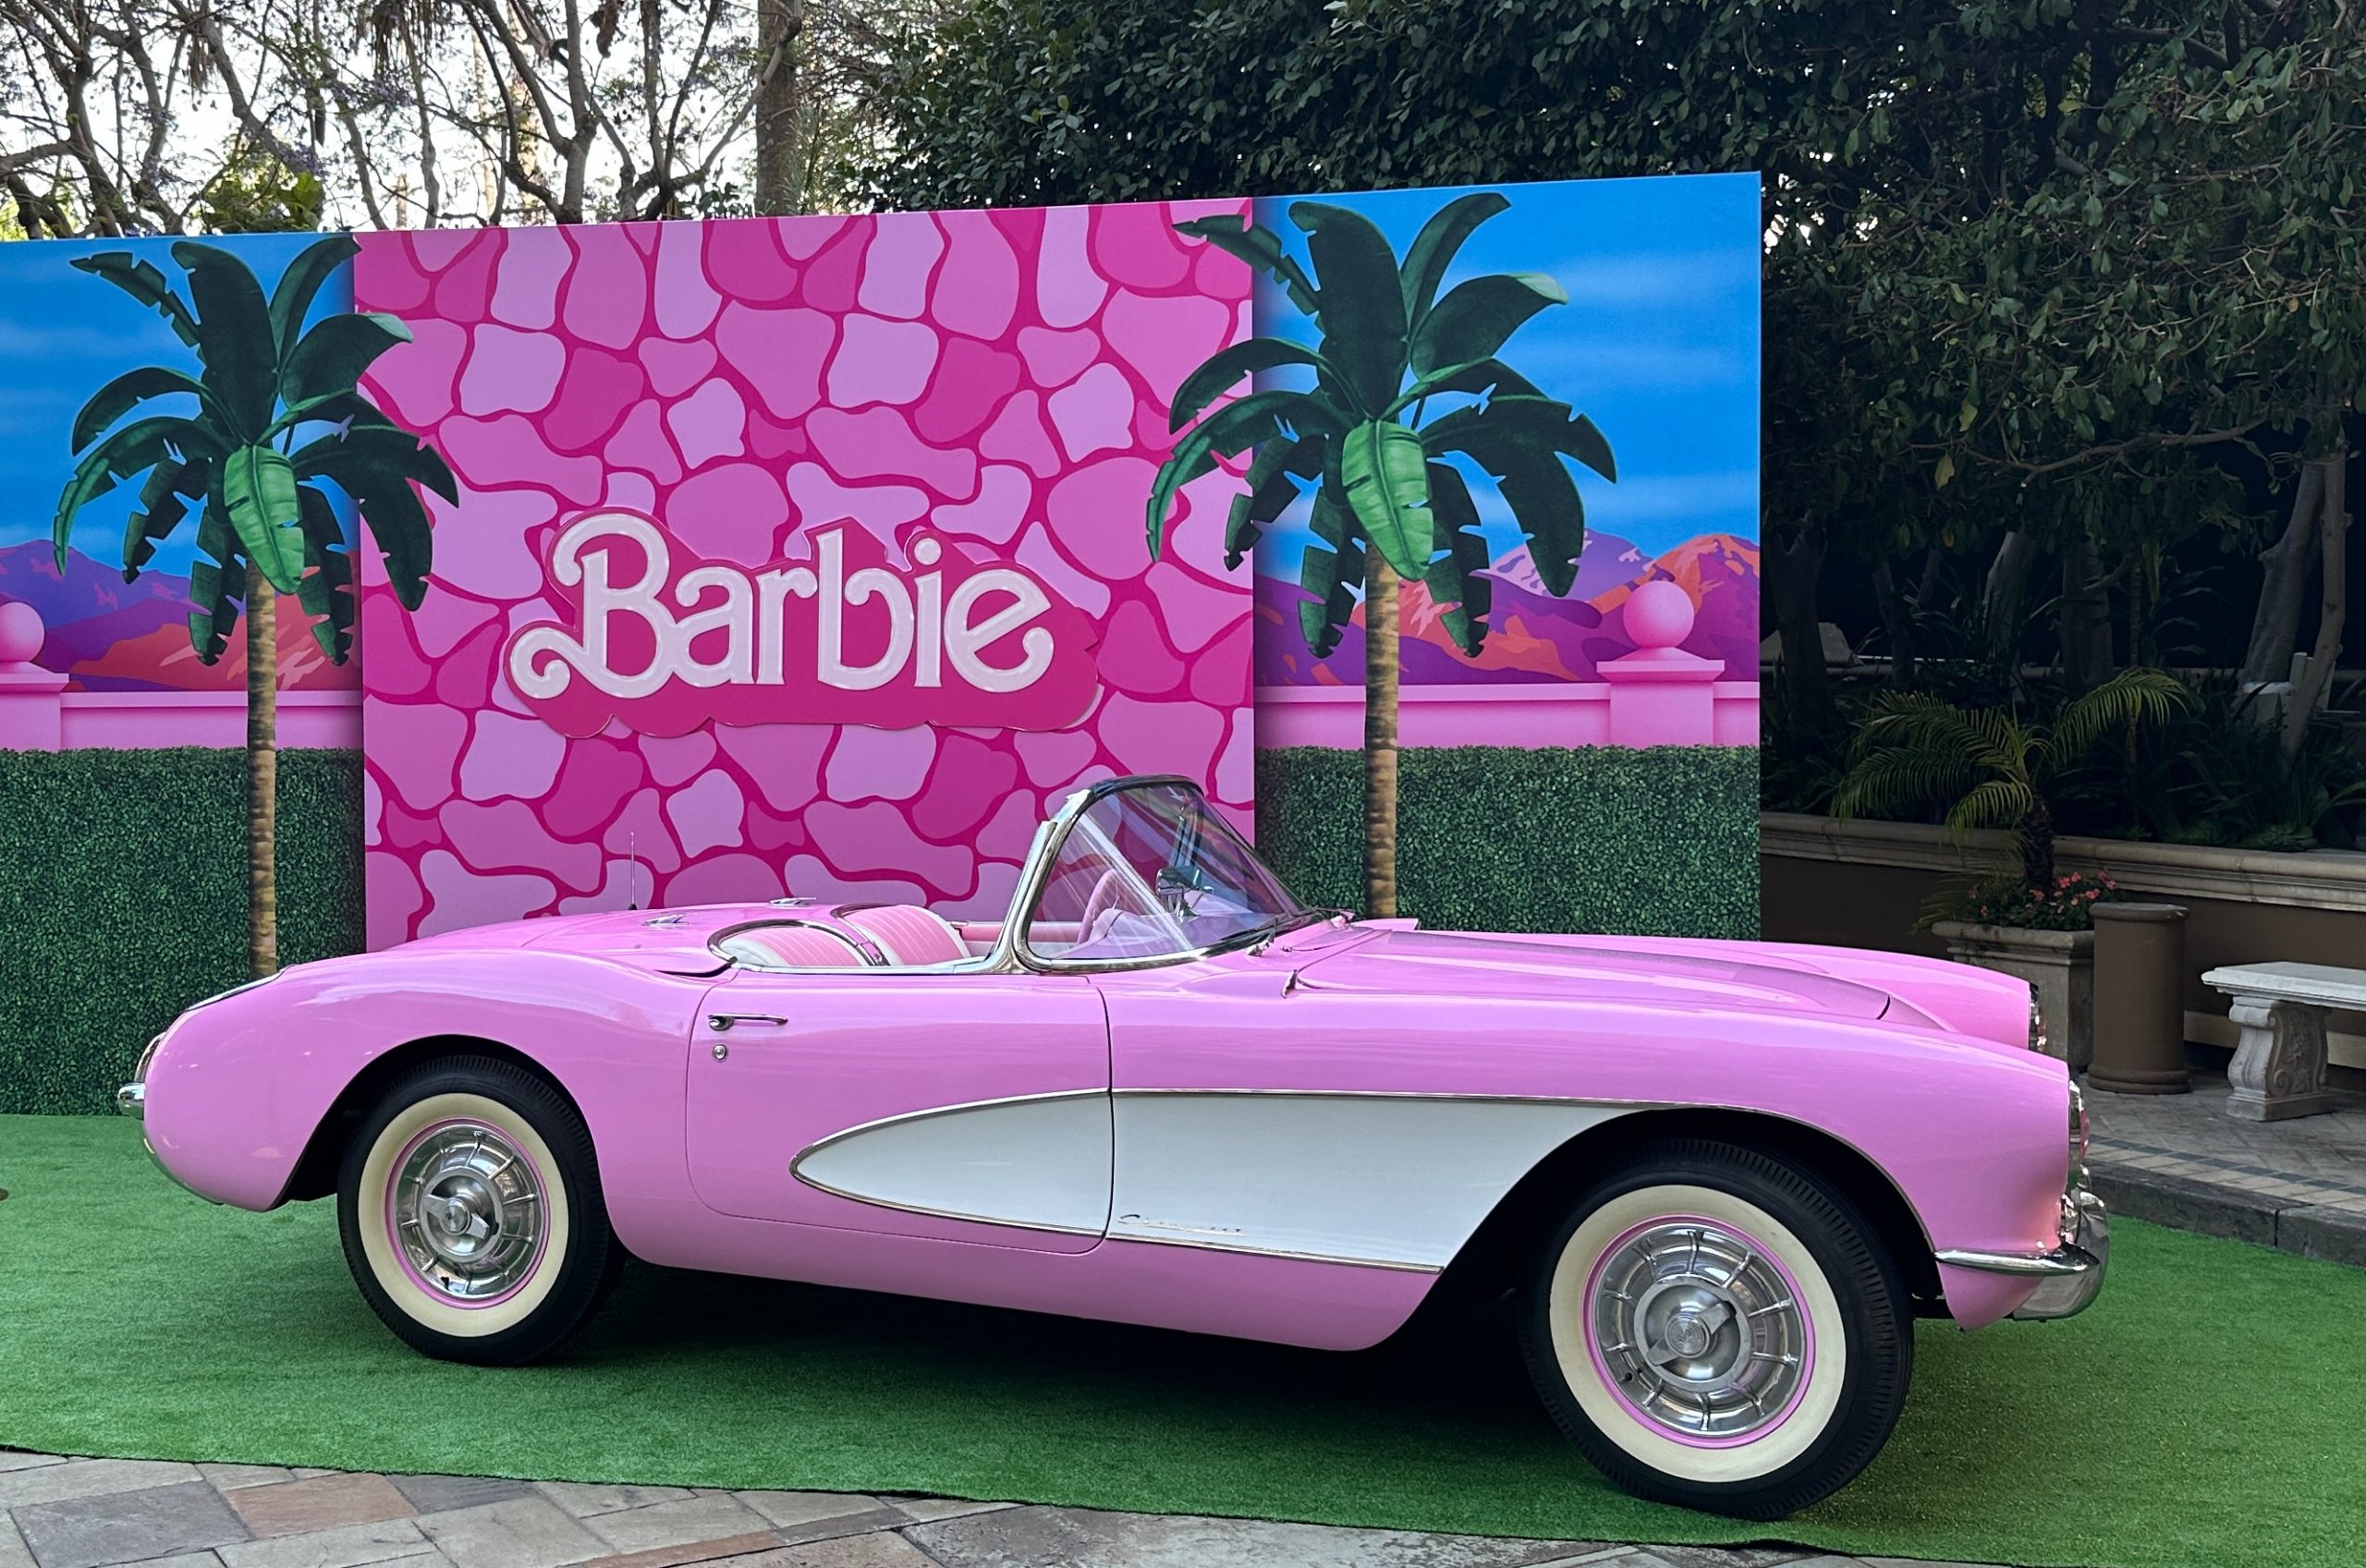 Real life Barbie car.